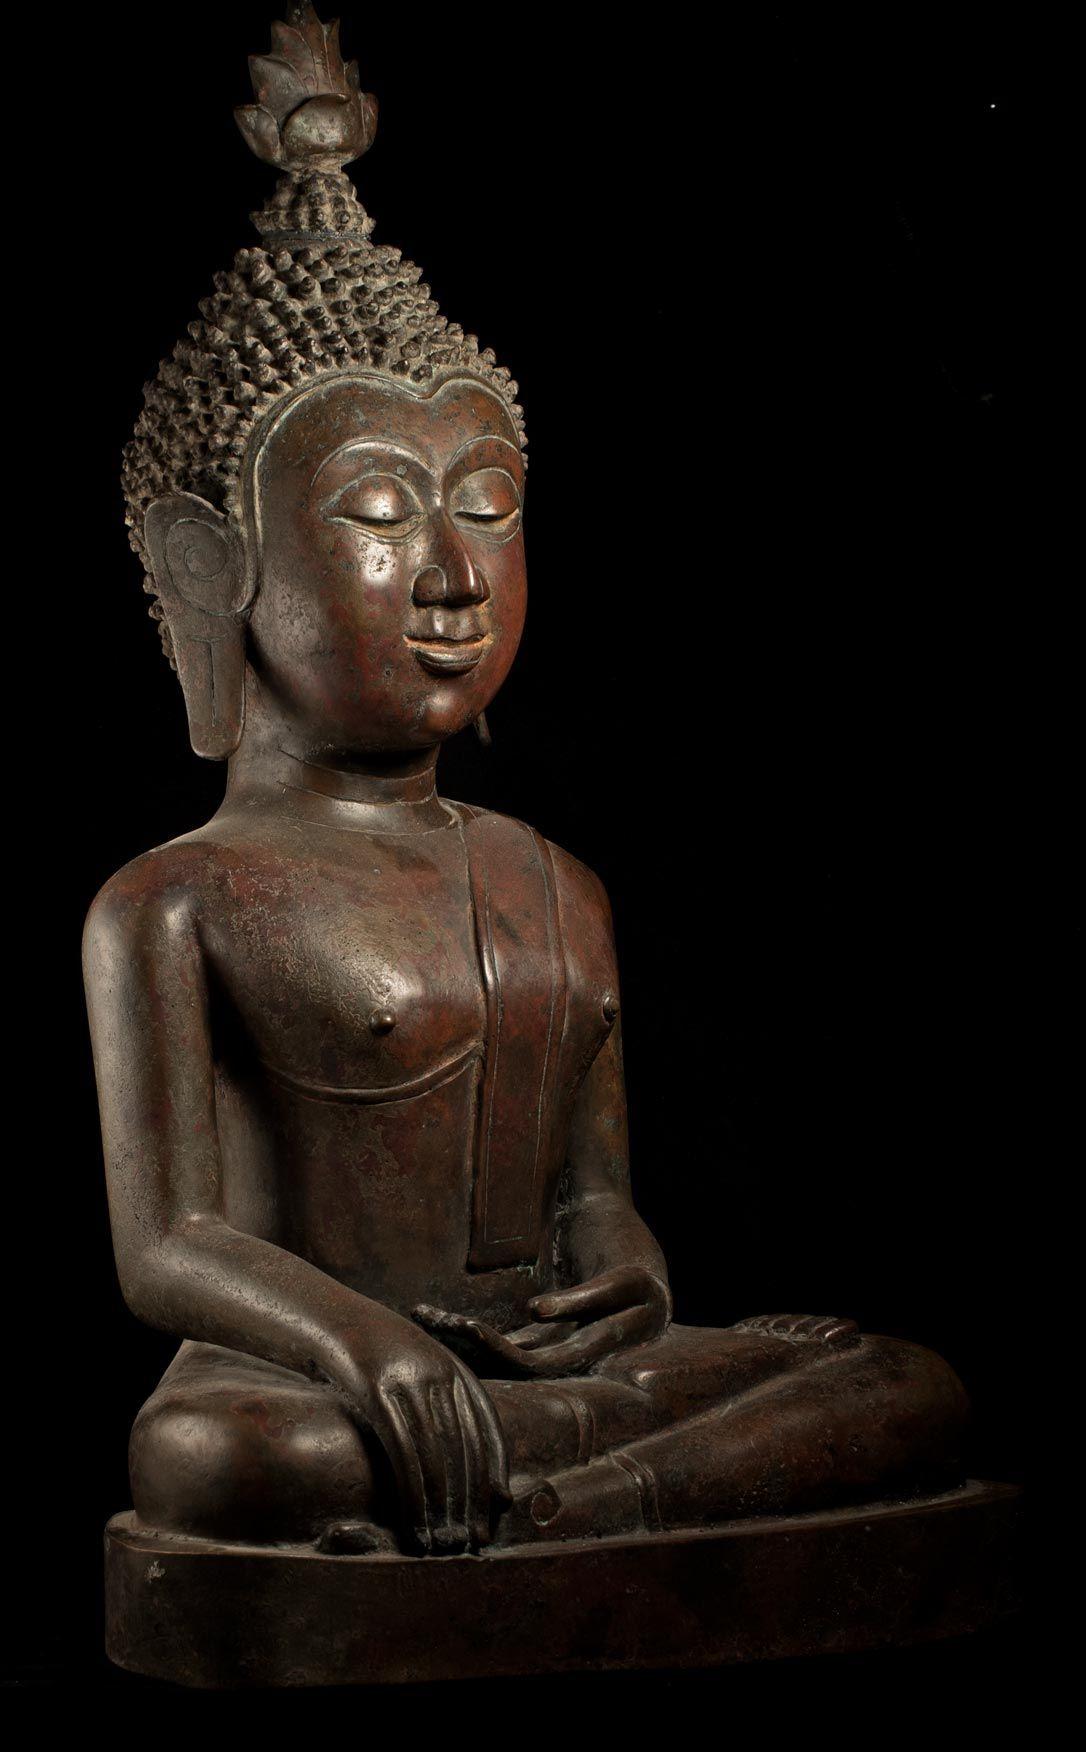 XIXe siècle Grand royaume de Bouddha en bronze du 18/19e siècle de Nan dans le nord-est de la Thaïlande - 8961